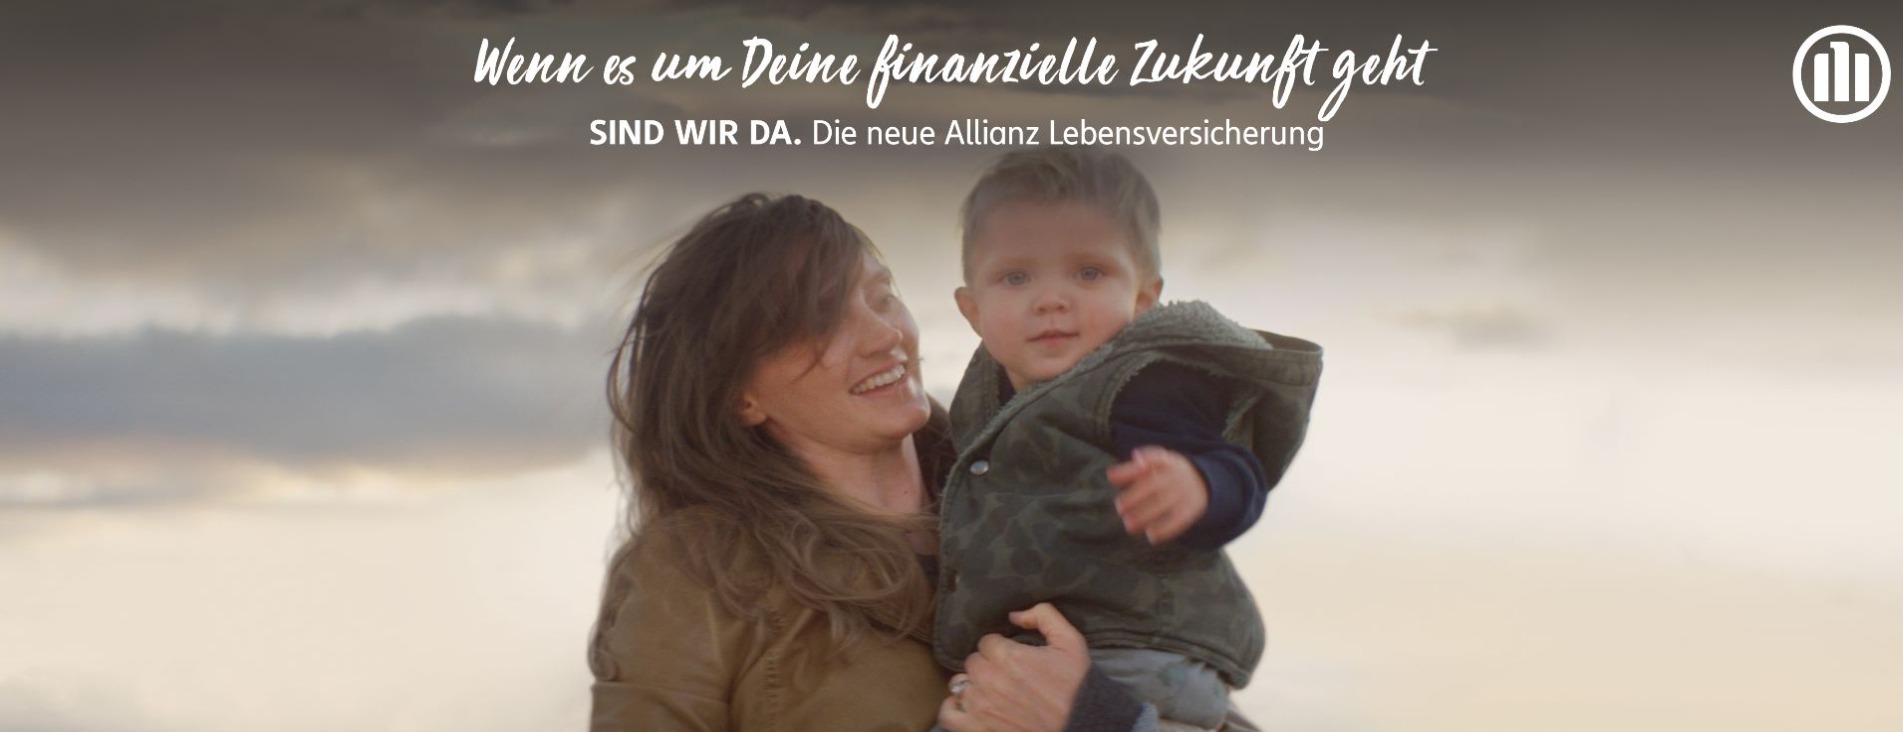 Allianz Versicherung Bianca Sturm Krostitz - Titelbild